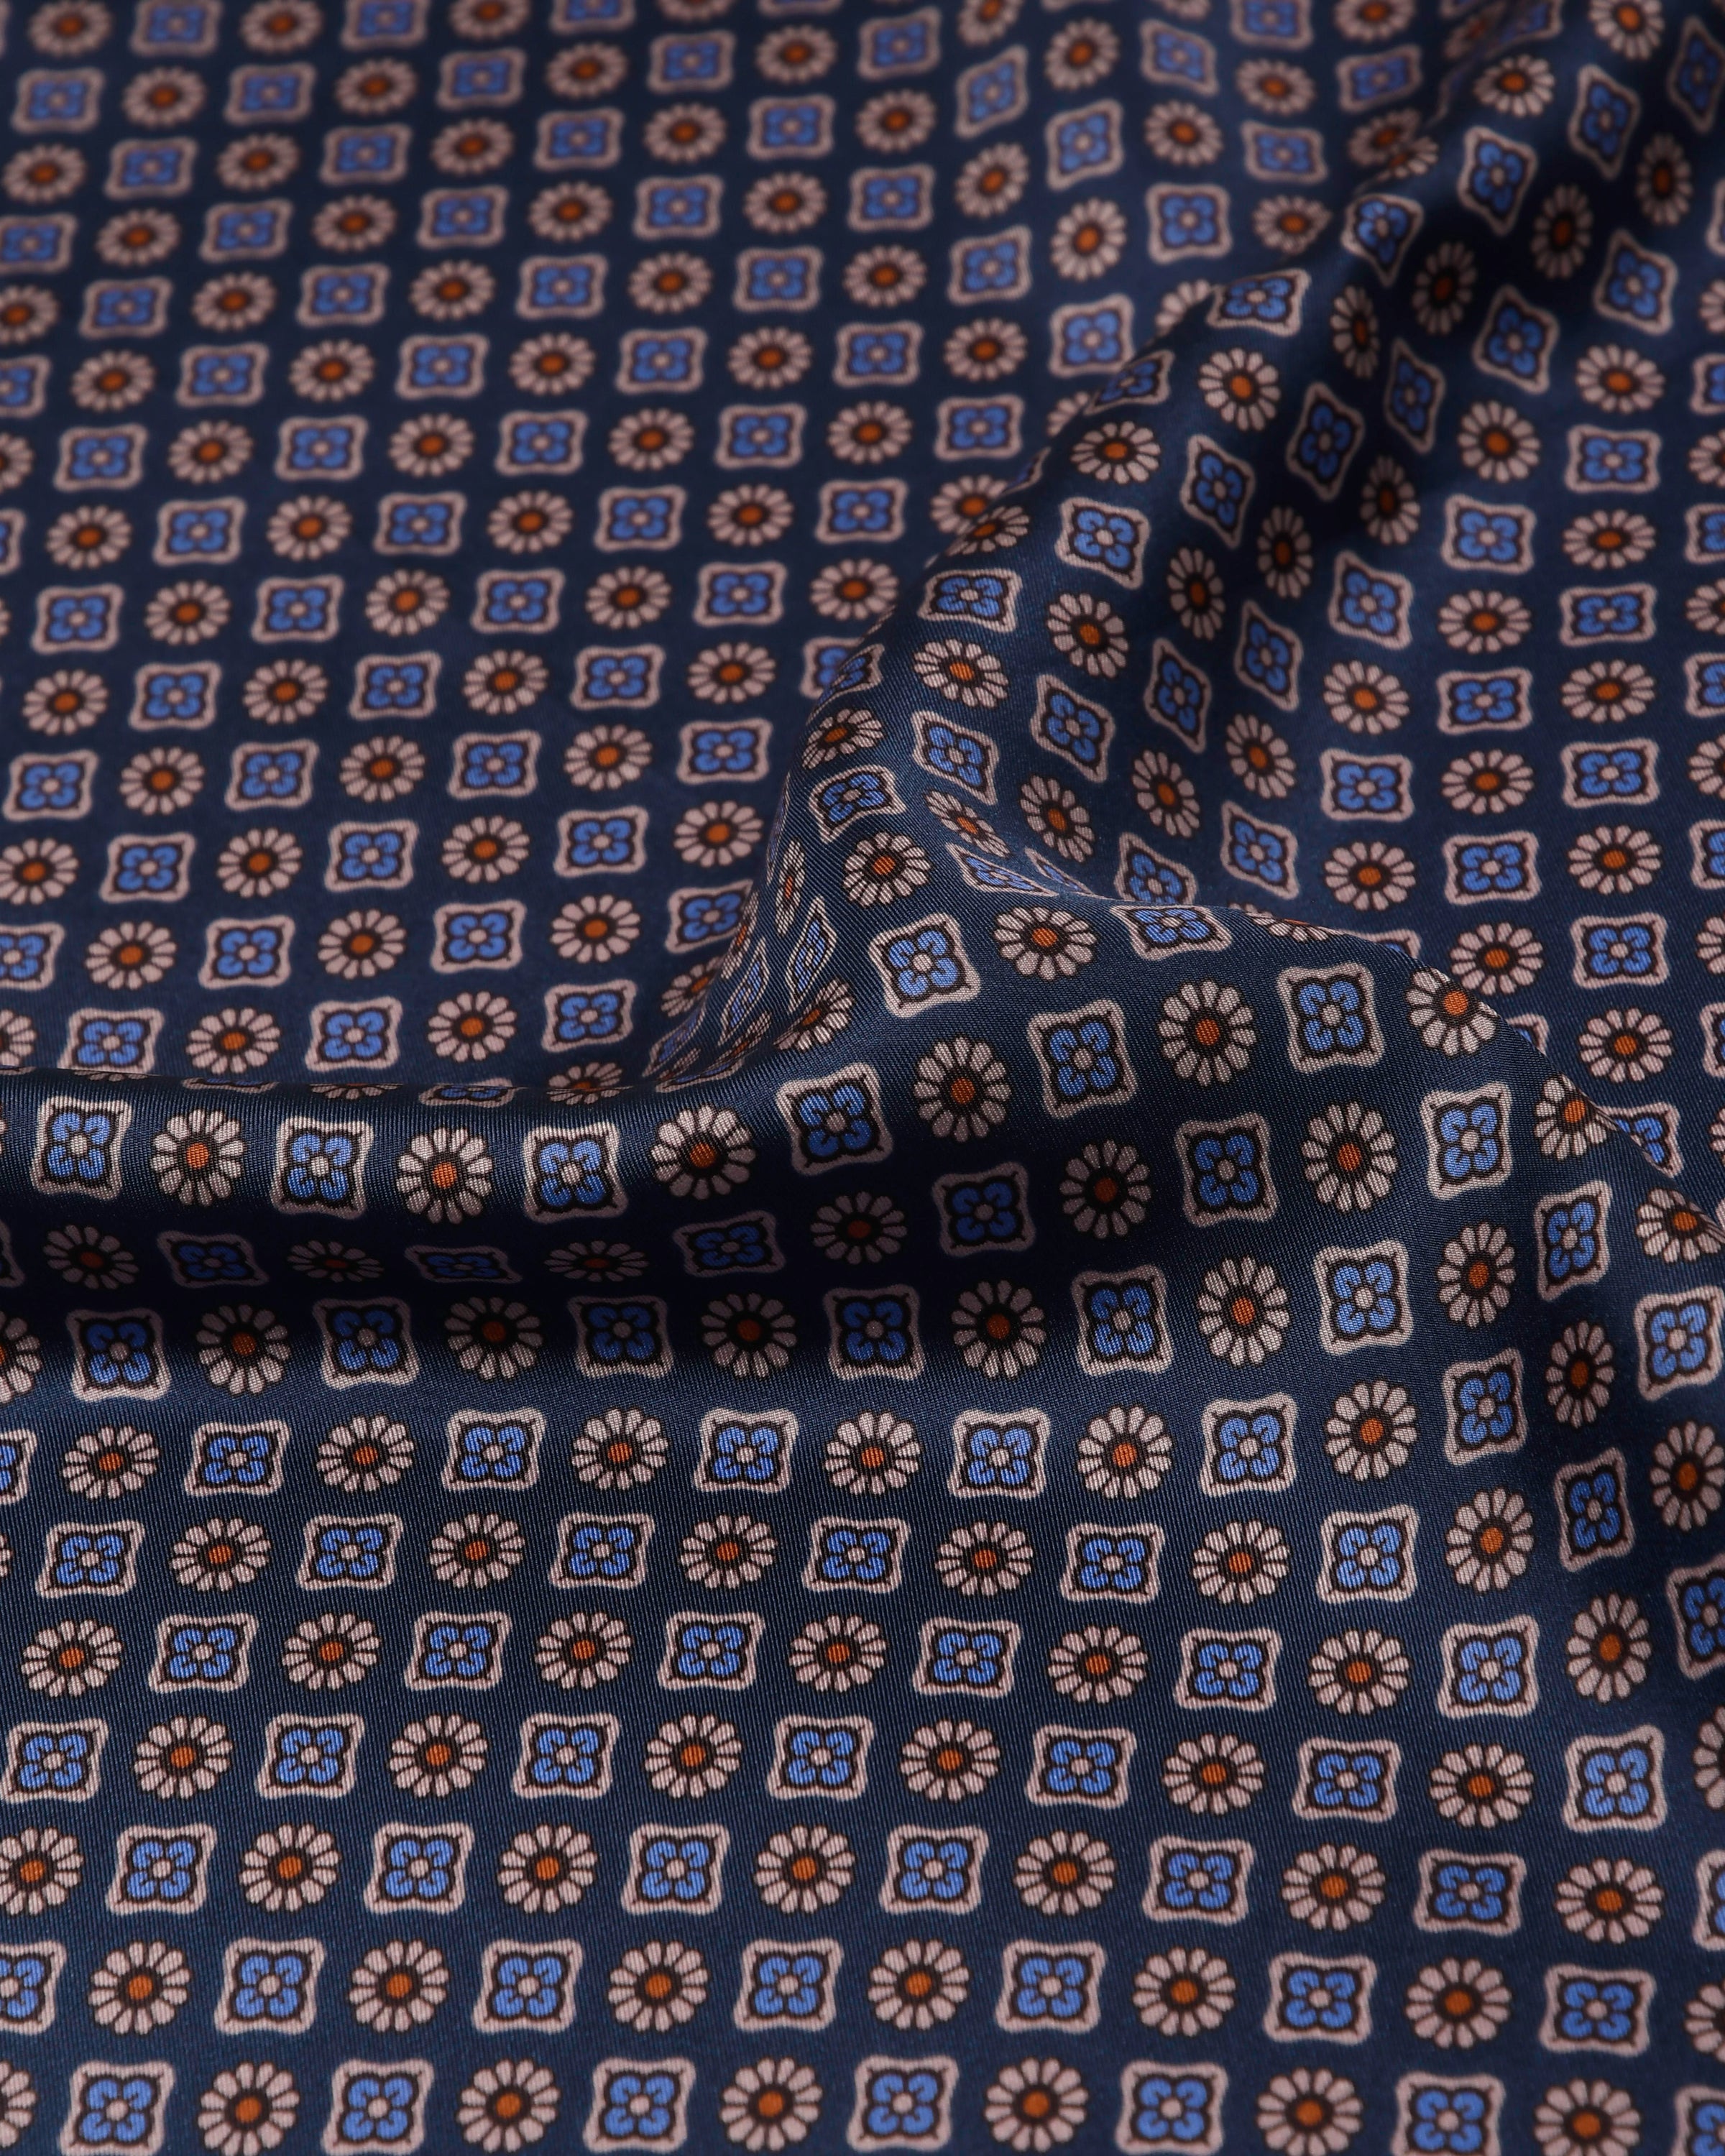 Handrolliertes Herrenseidentuch aus Twill-Seide 53x53, dezente Muster blau